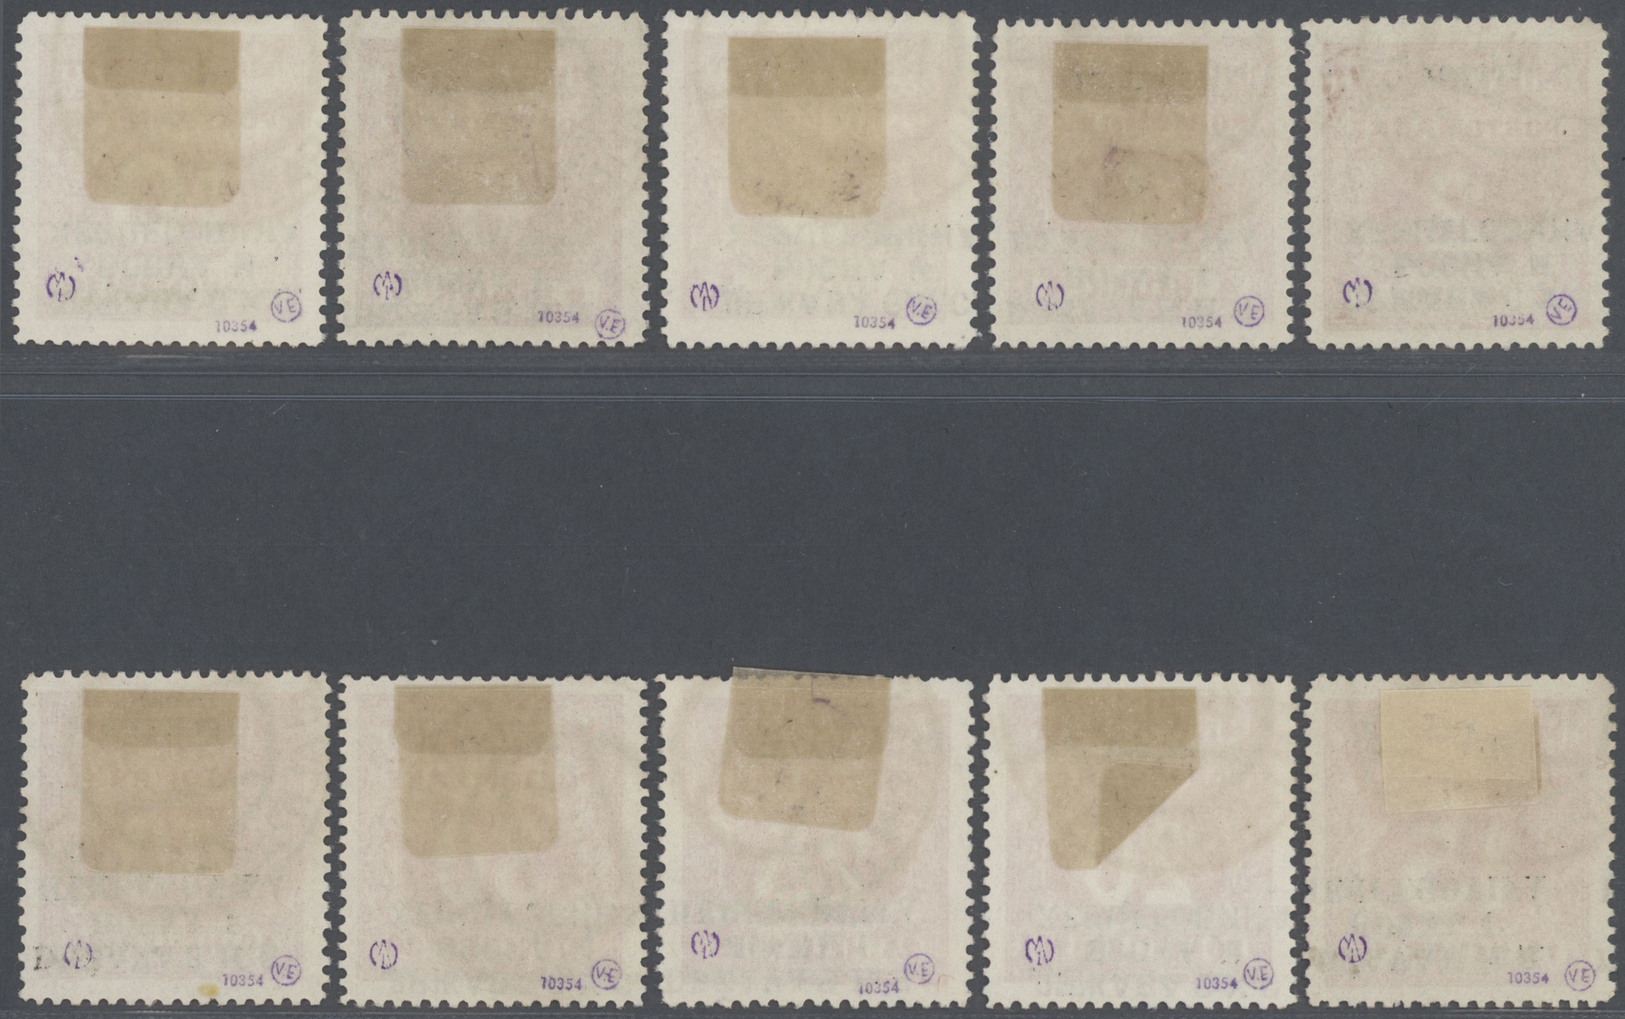 O Bosnien Und Herzegowina (Österreich 1879/1918) - Portomarken: 1916/1918. Set Of 13 Stamps. All Used. Inverted - Bosnie-Herzegovine